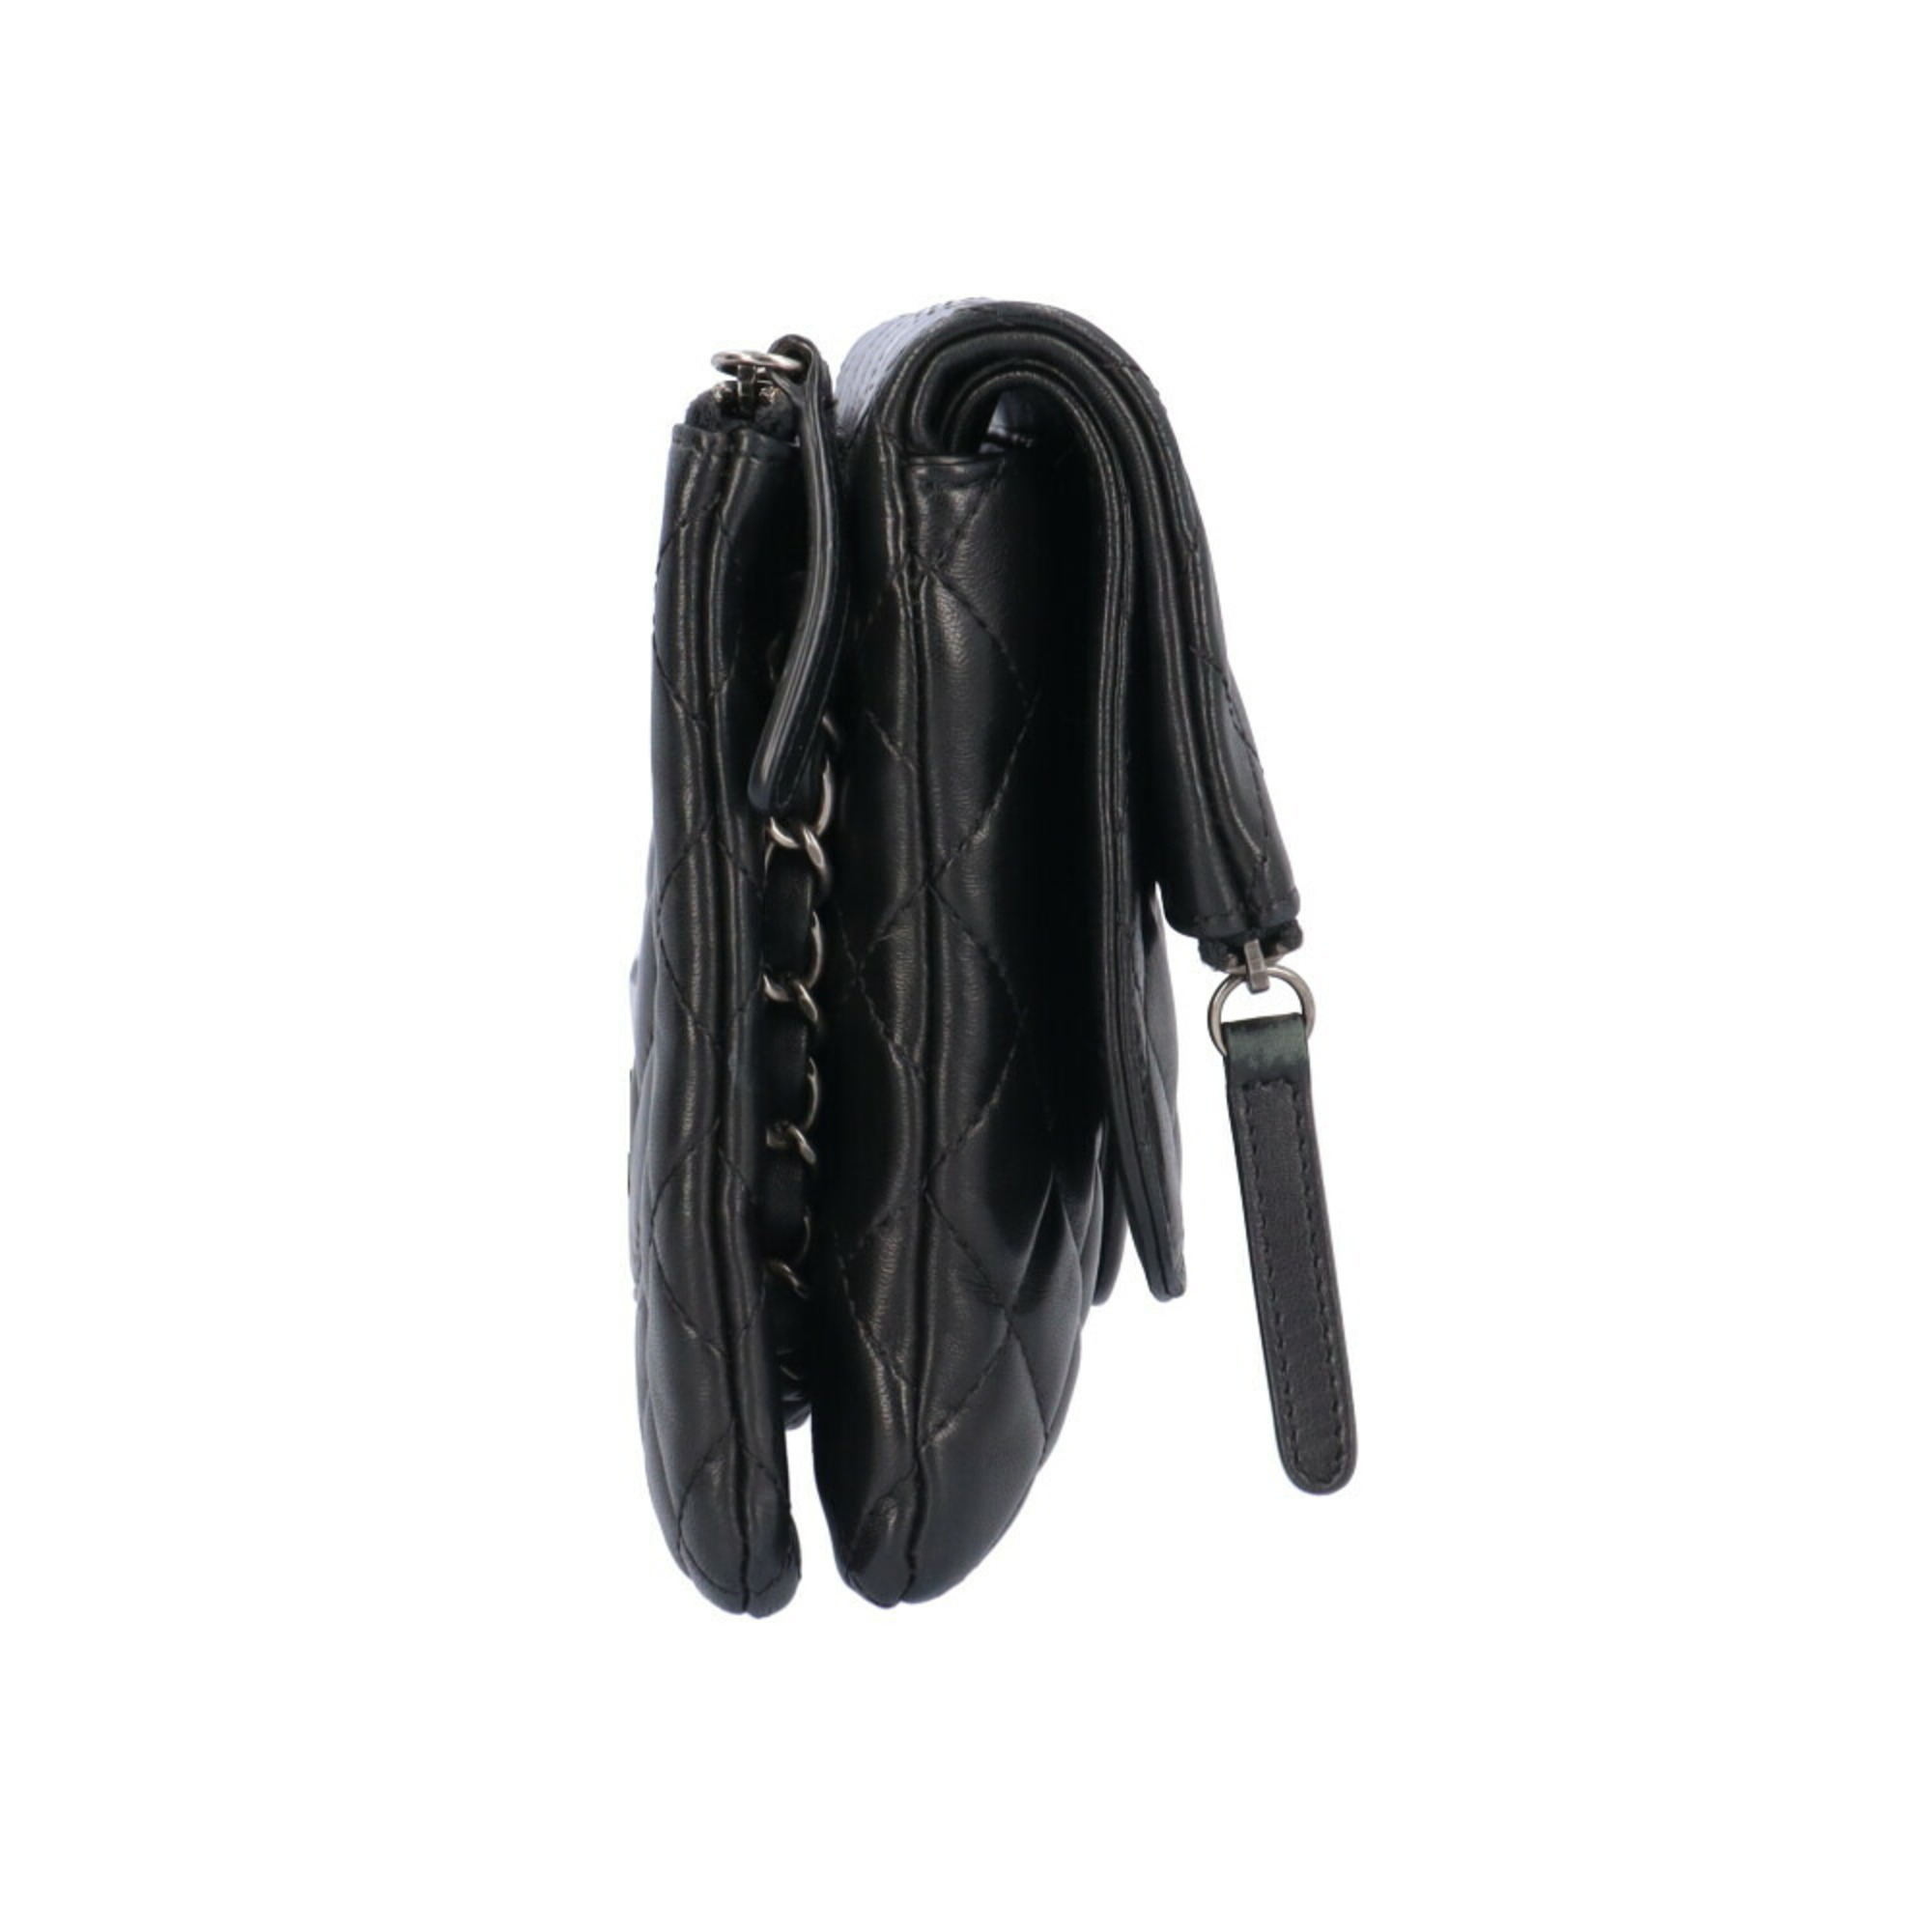 Chanel Matelasse Shoulder Bag Leather Black Women's CHANEL 2way